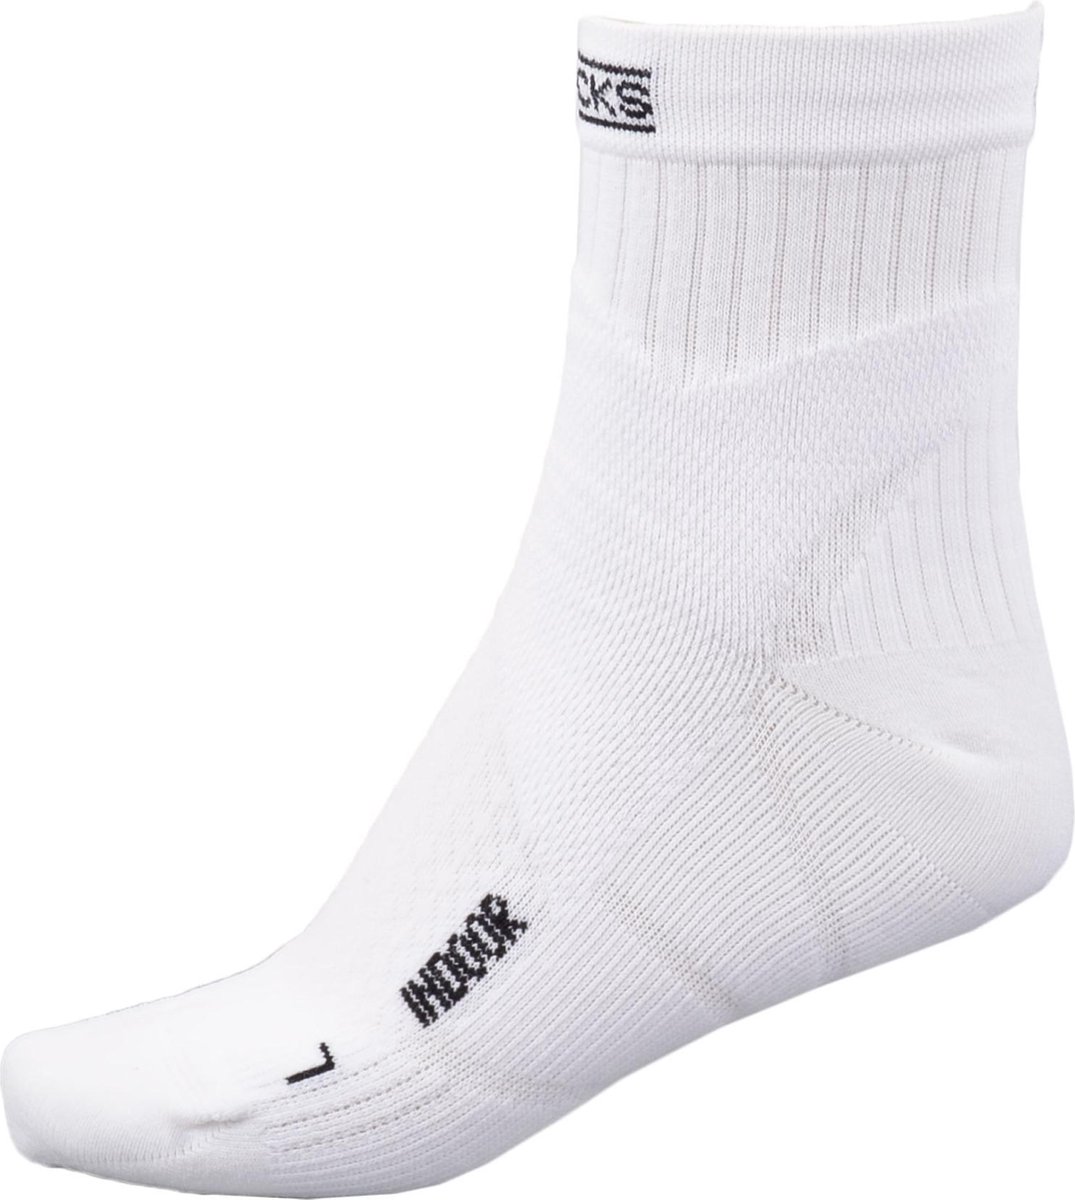 X-Socks Indoor - Sportsokken - Unisex - Maat 39-42 - wit